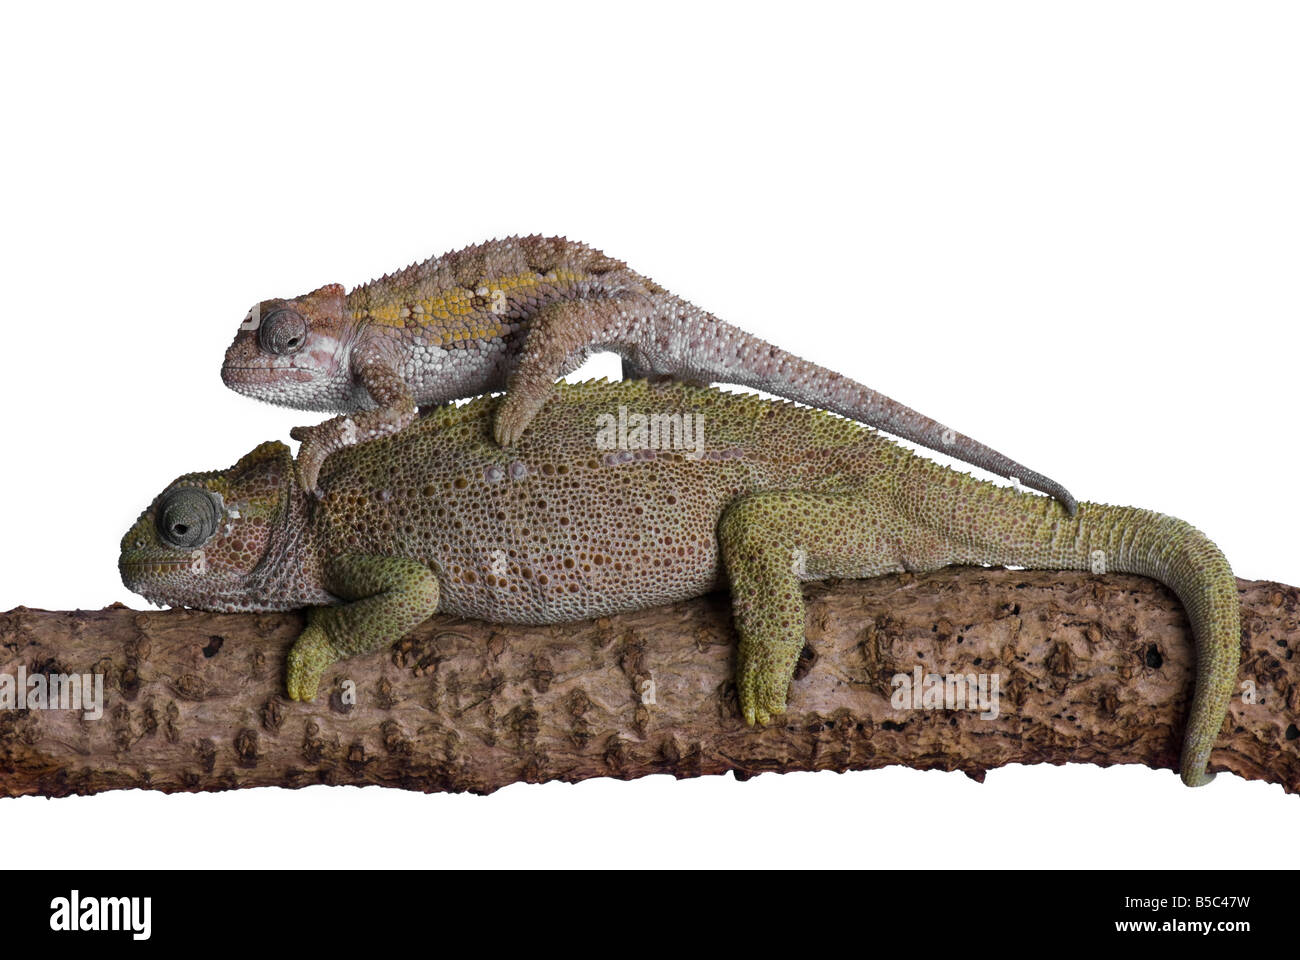 Baby chameleon si arrampica su retro del genitore Foto Stock